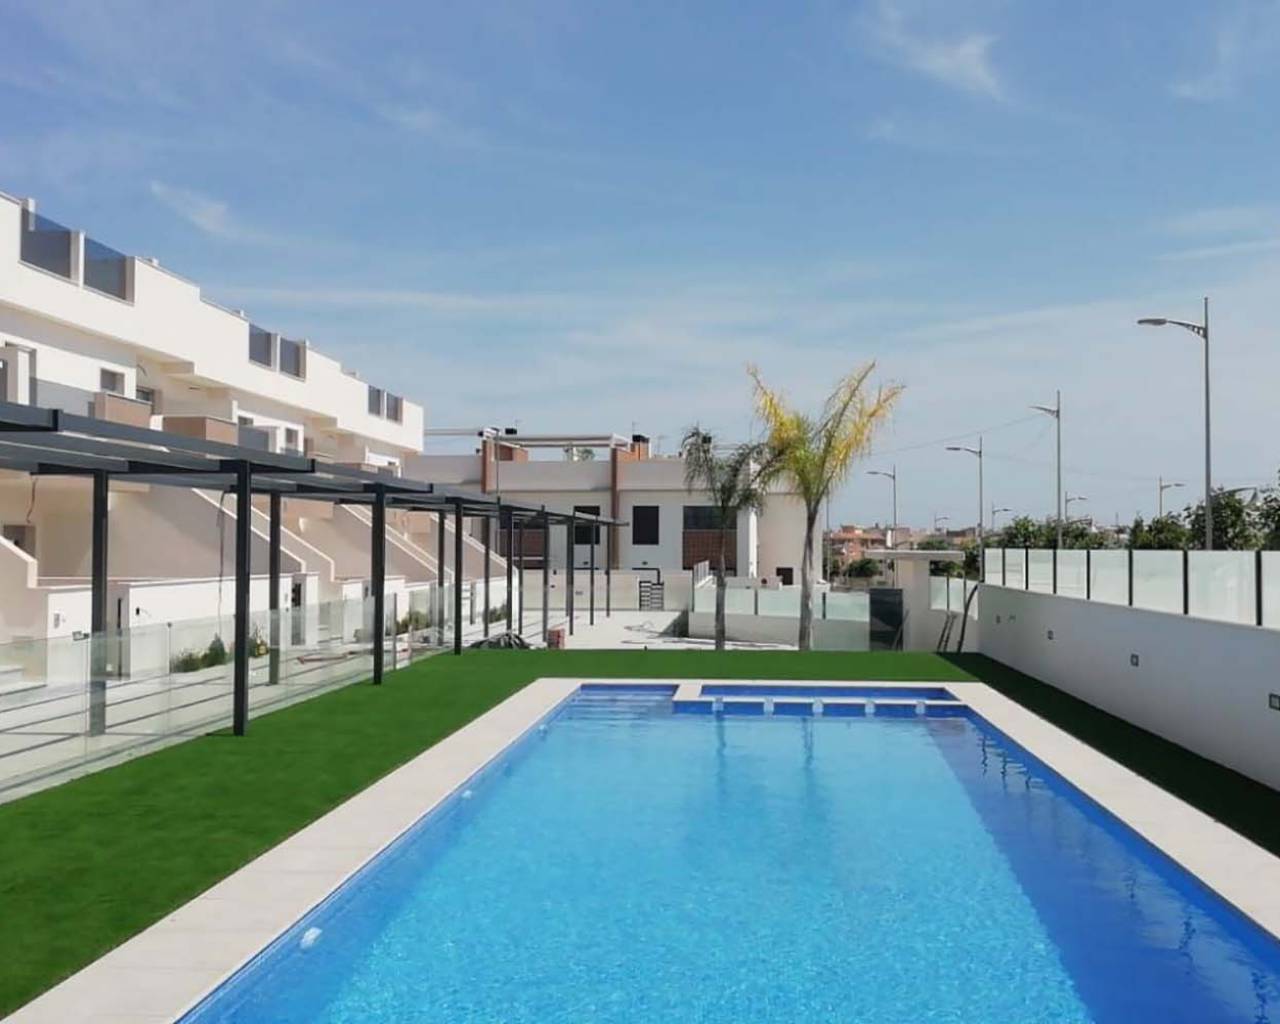 Apartamento de obra nueva con piscina comunitaria en venta en Pilar de la Horadada, Alicante